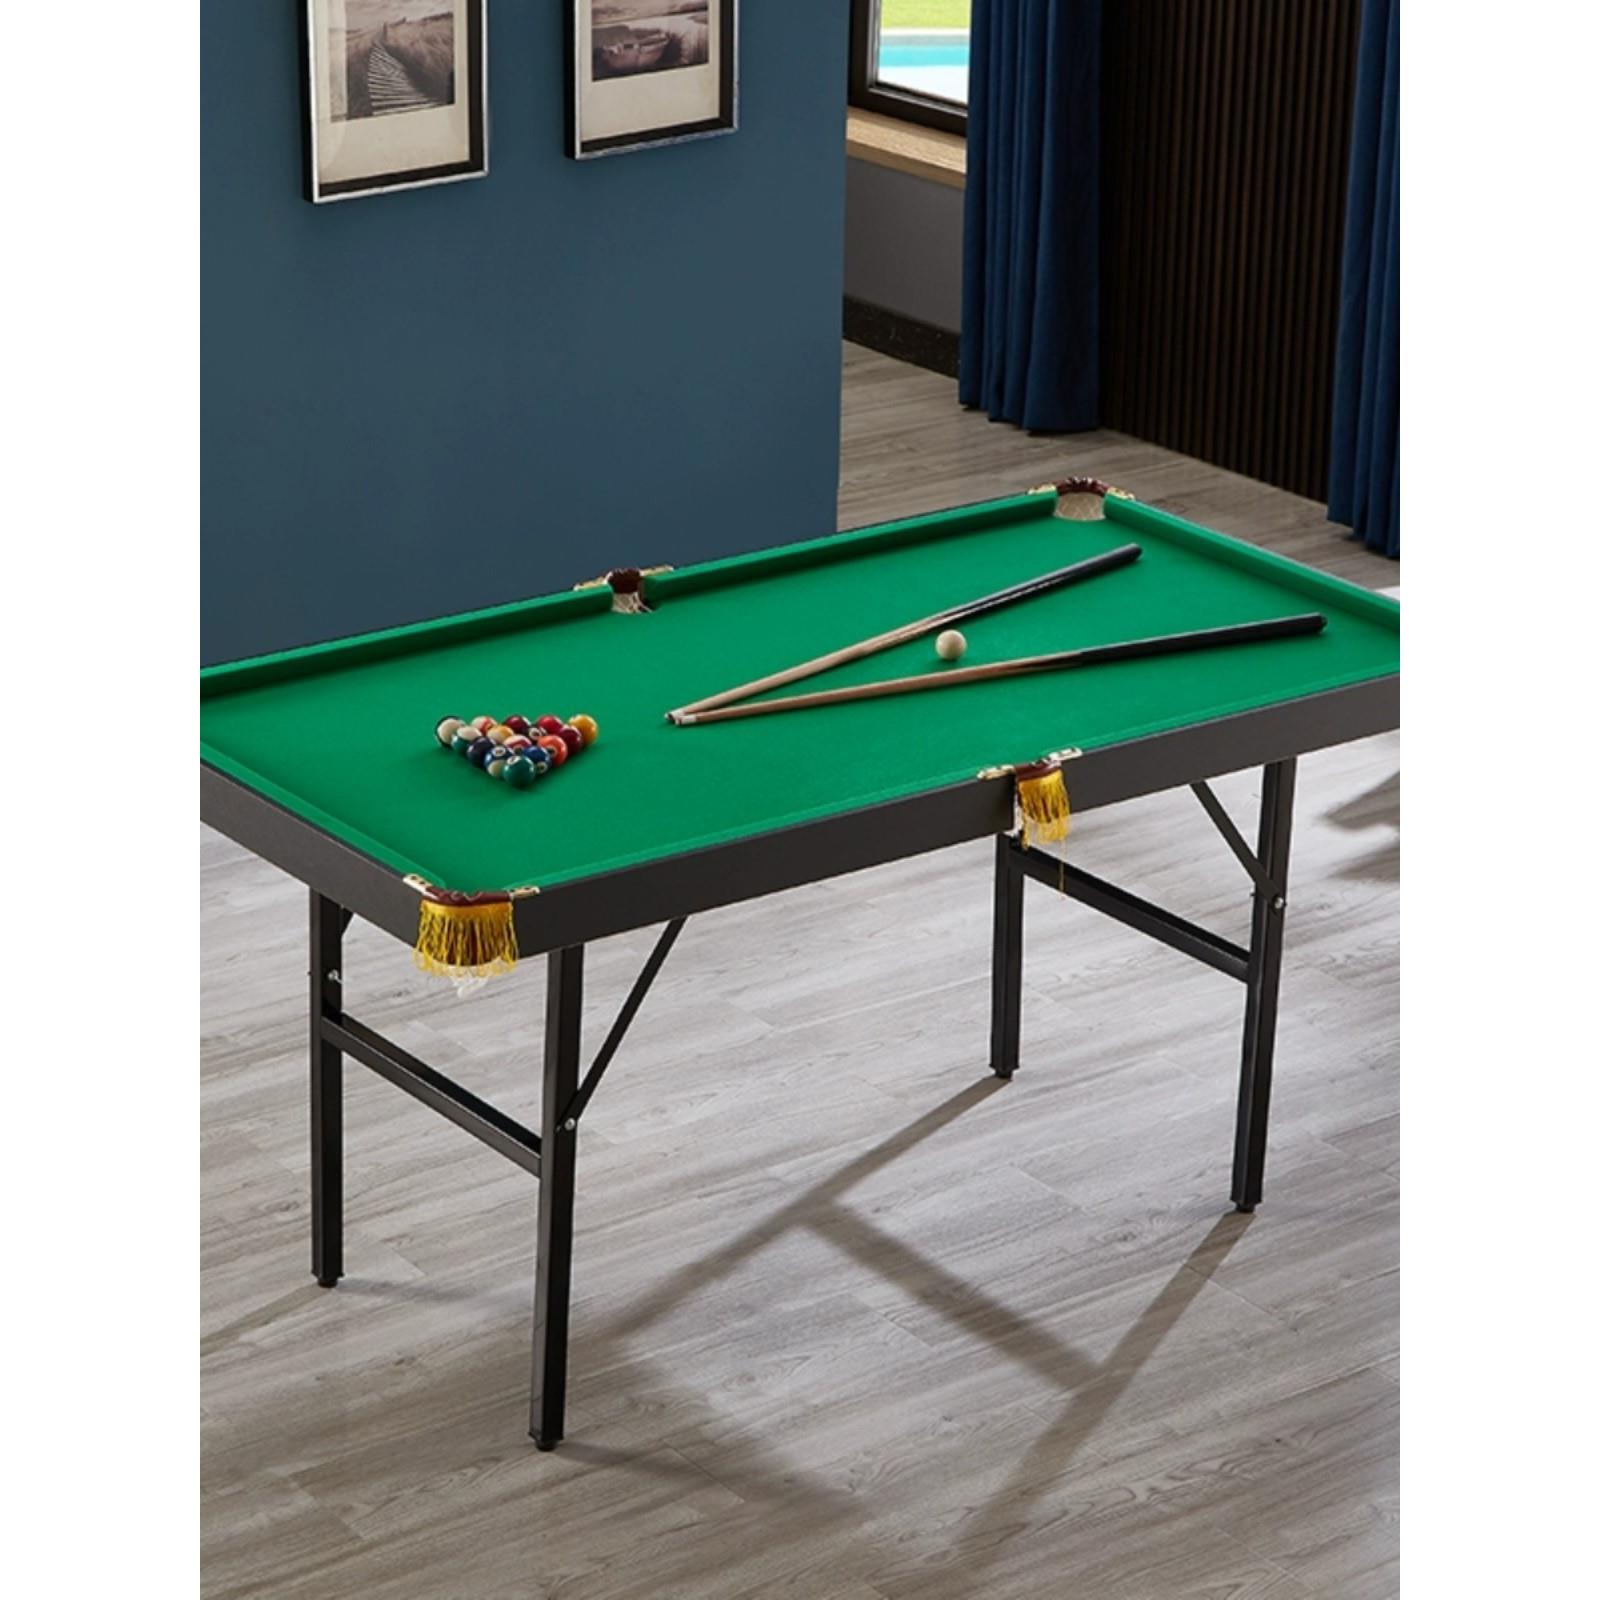 豪乐迪儿童休闲台球桌室内家用多功能三合一乒乓球台写字桌球台子